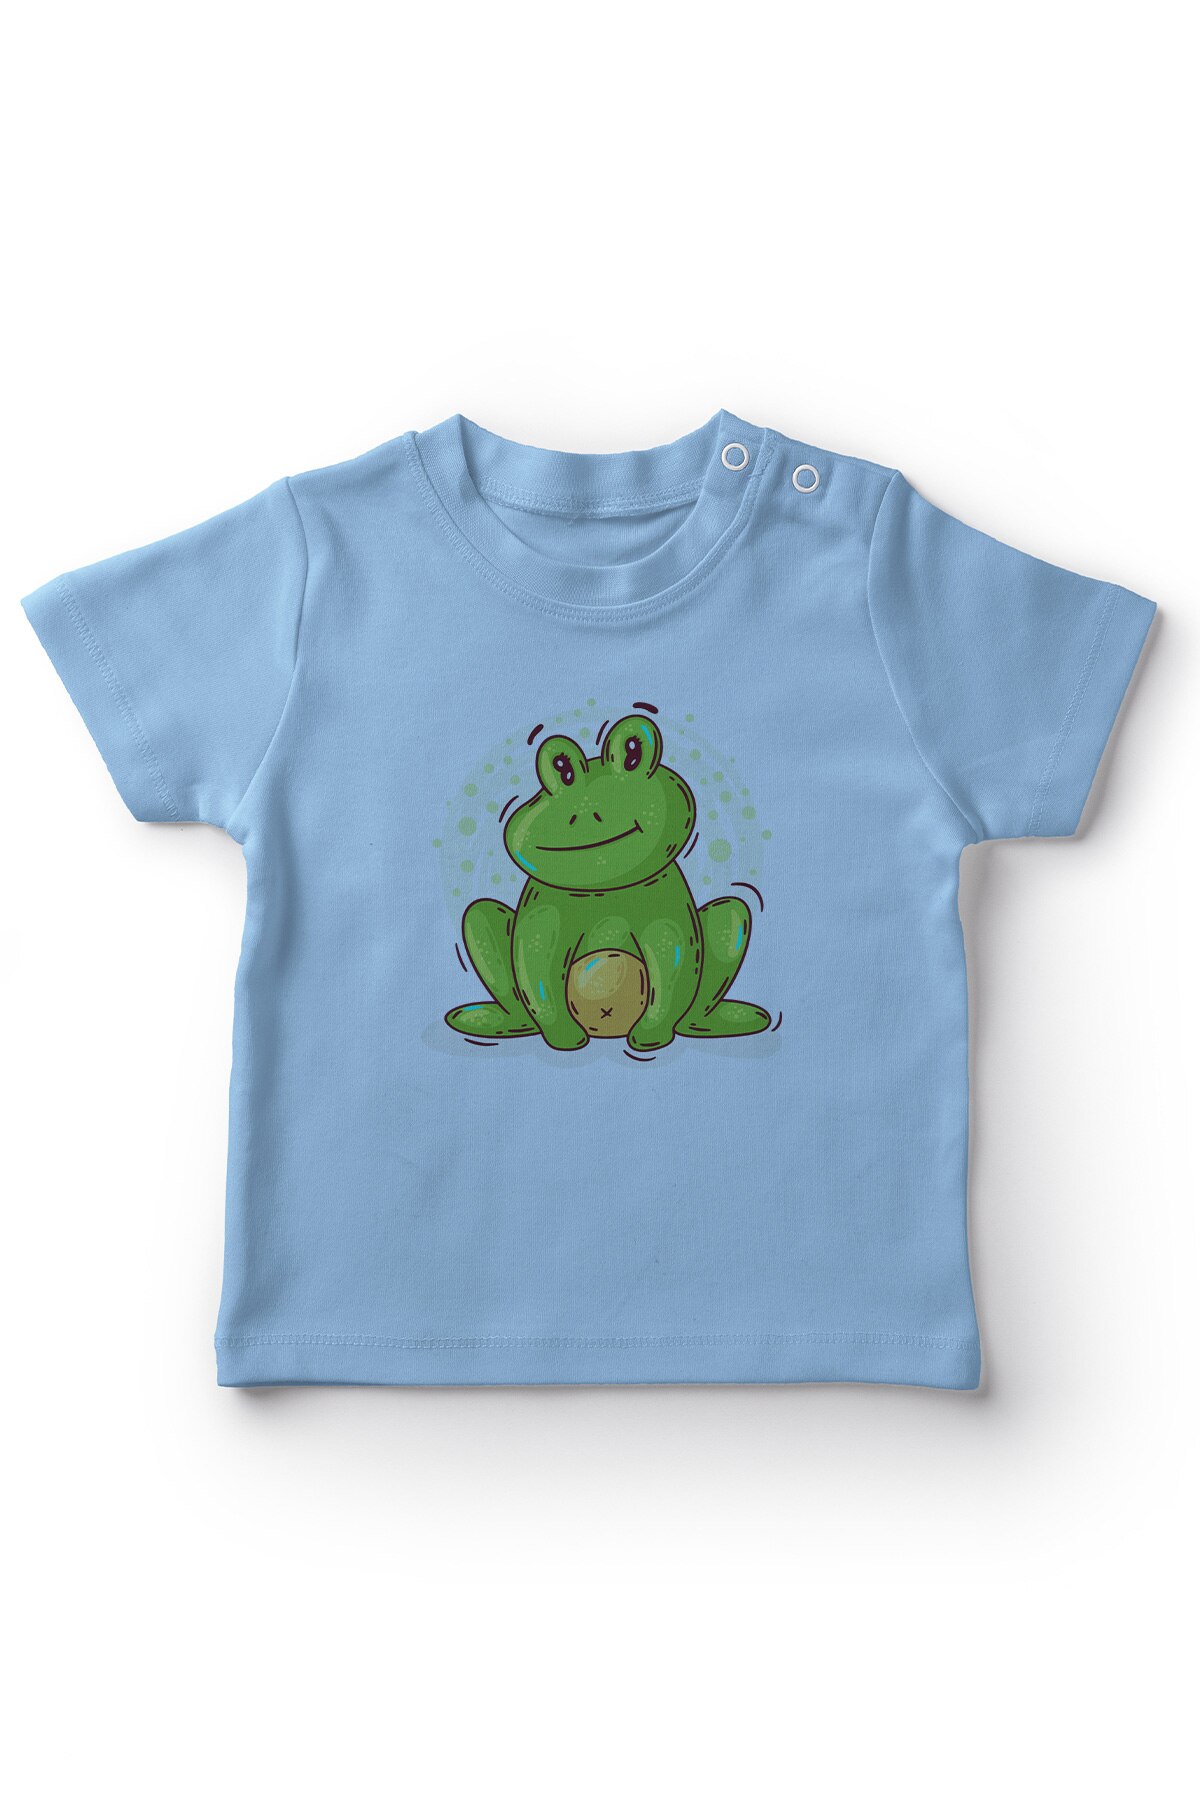 Angemiel baby sød siddende frø baby dreng t-shirt blå